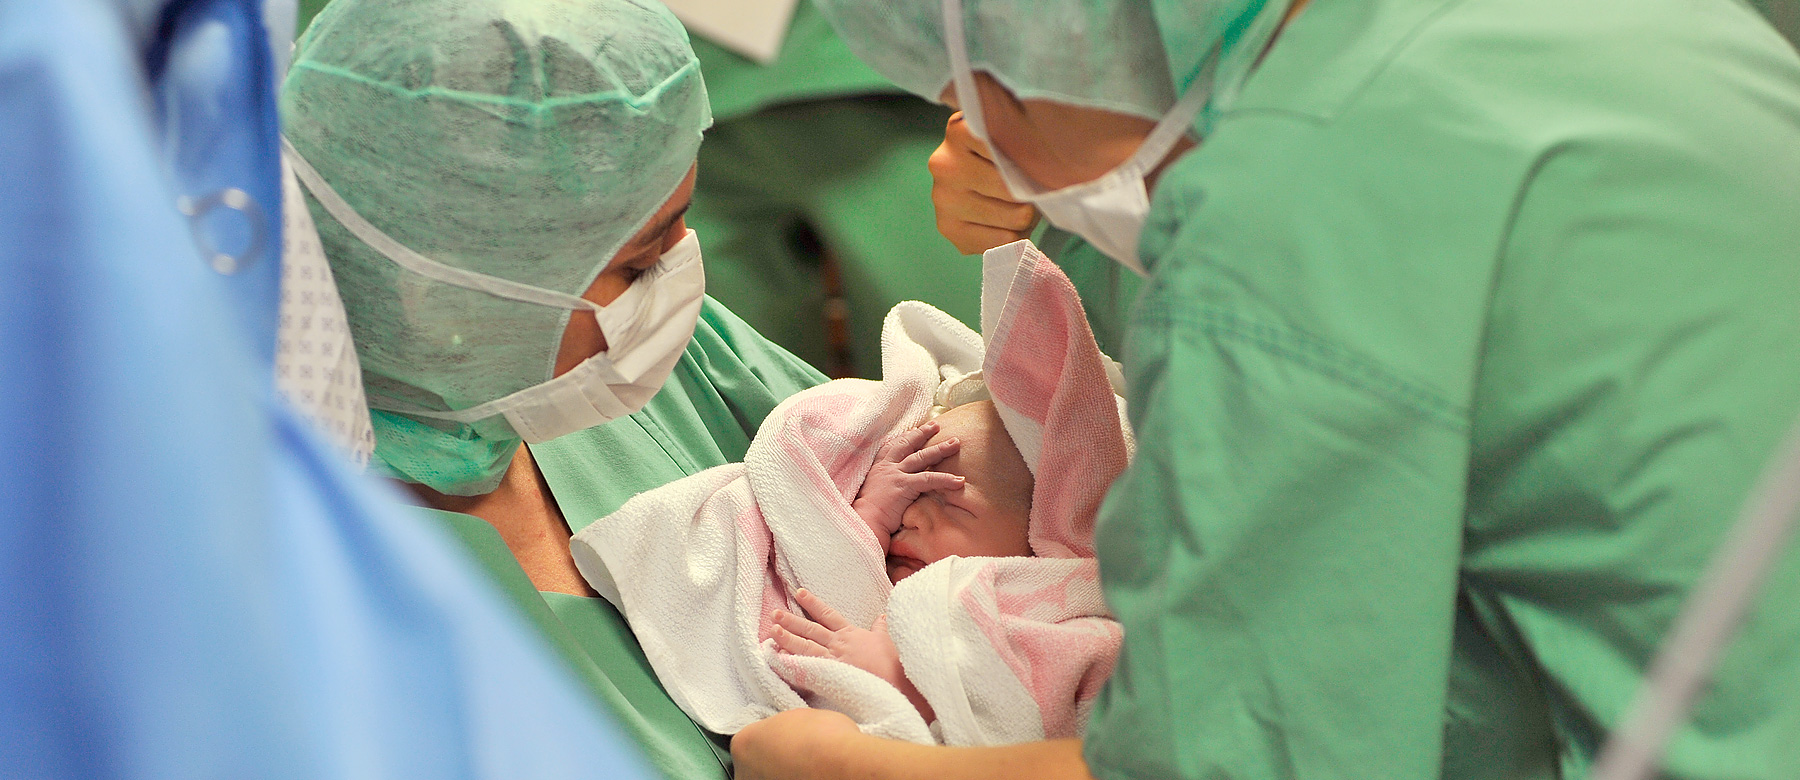 Eine Kinderkrankenpflegerin im Operationssaal hält ein Neugeborenes eingewickelt in ein Handtuch im Arm.